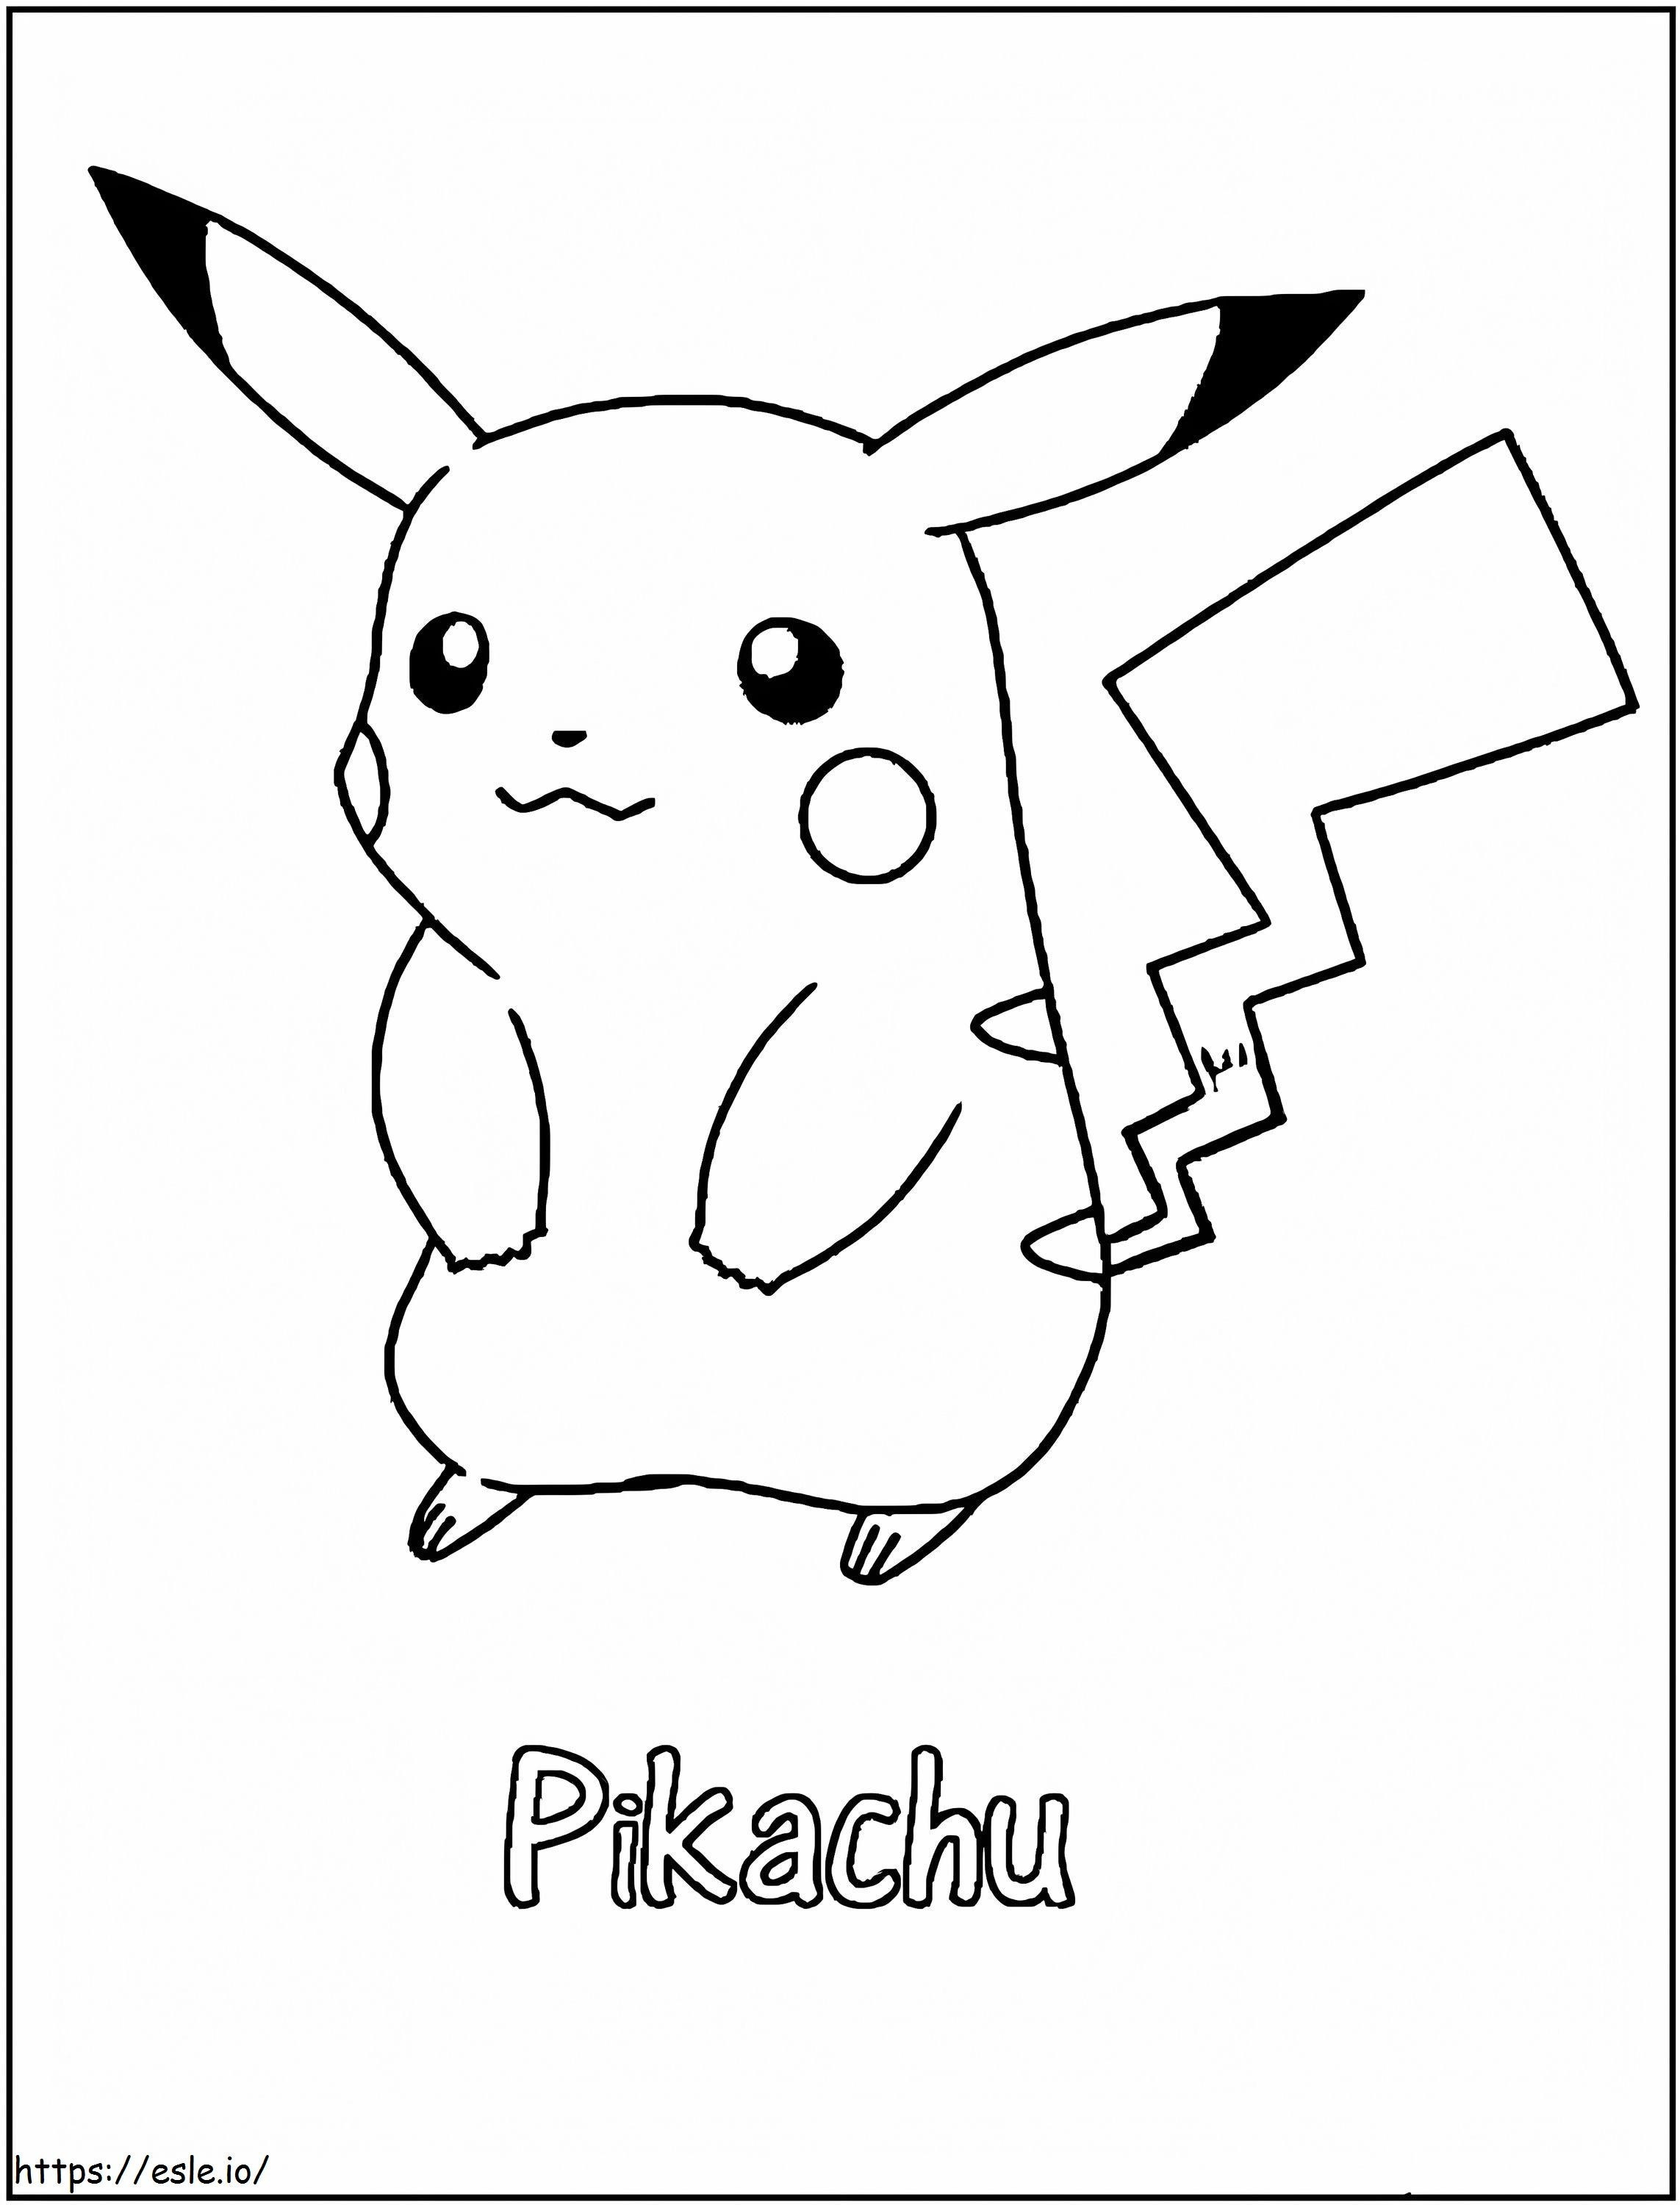 Beeindruckendes Pikachu ausmalbilder